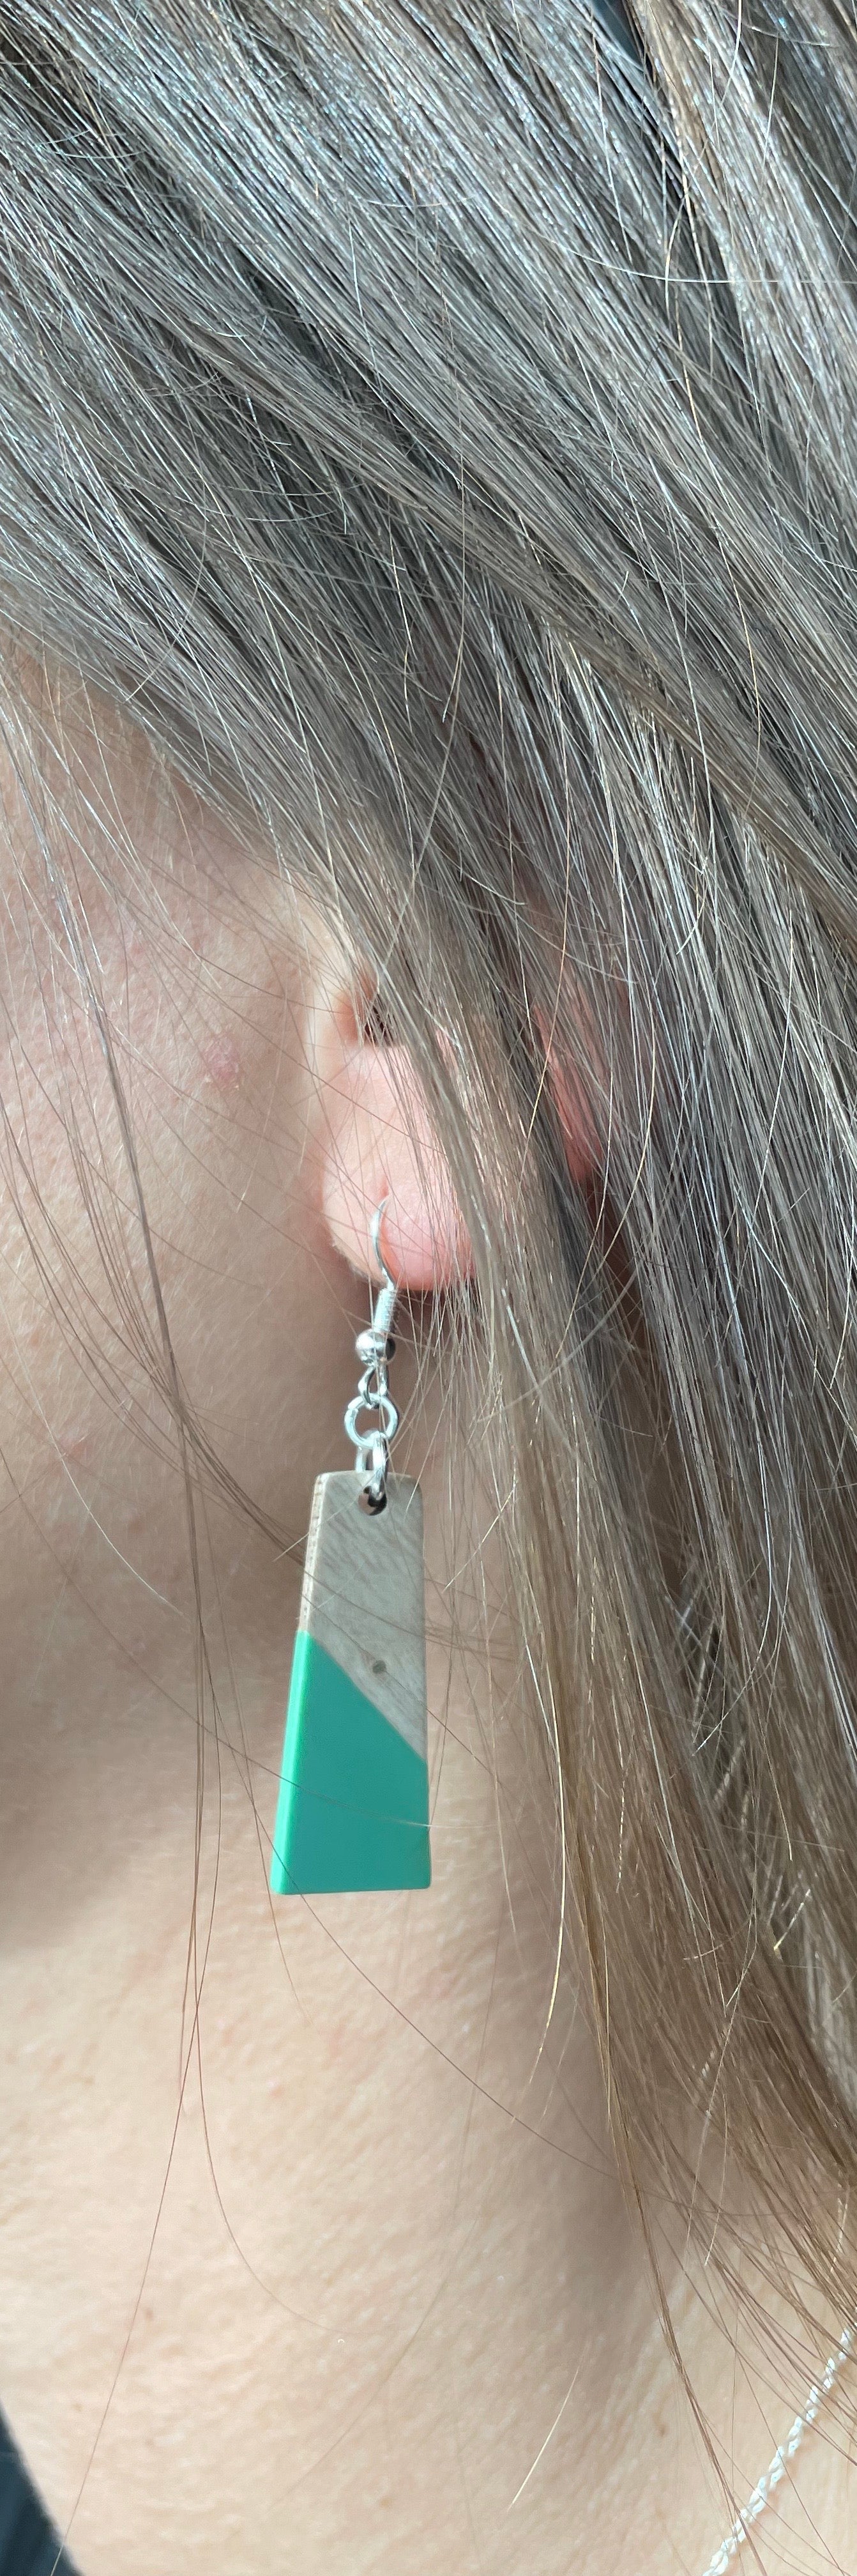 Green & wood earrings